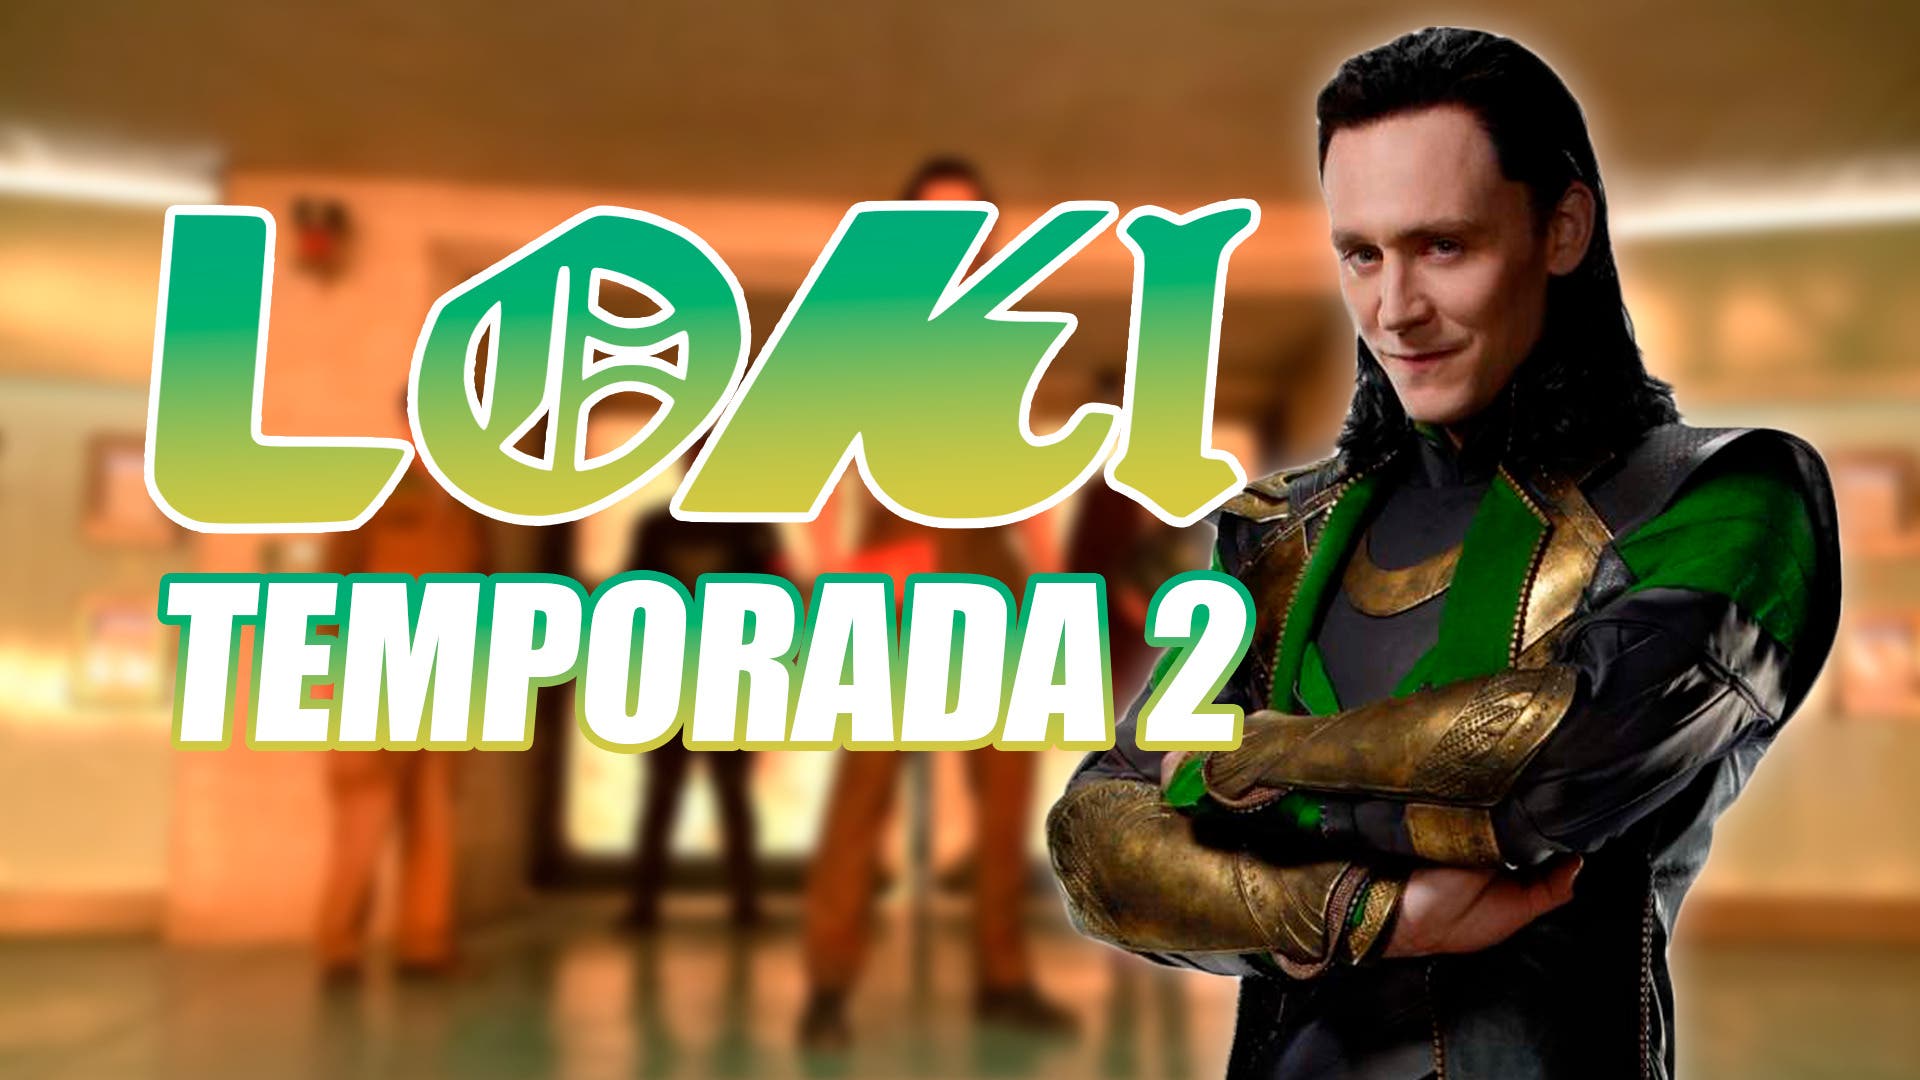 Loki Temporada 2 llega hoy: ¿dónde y a qué hora ver?